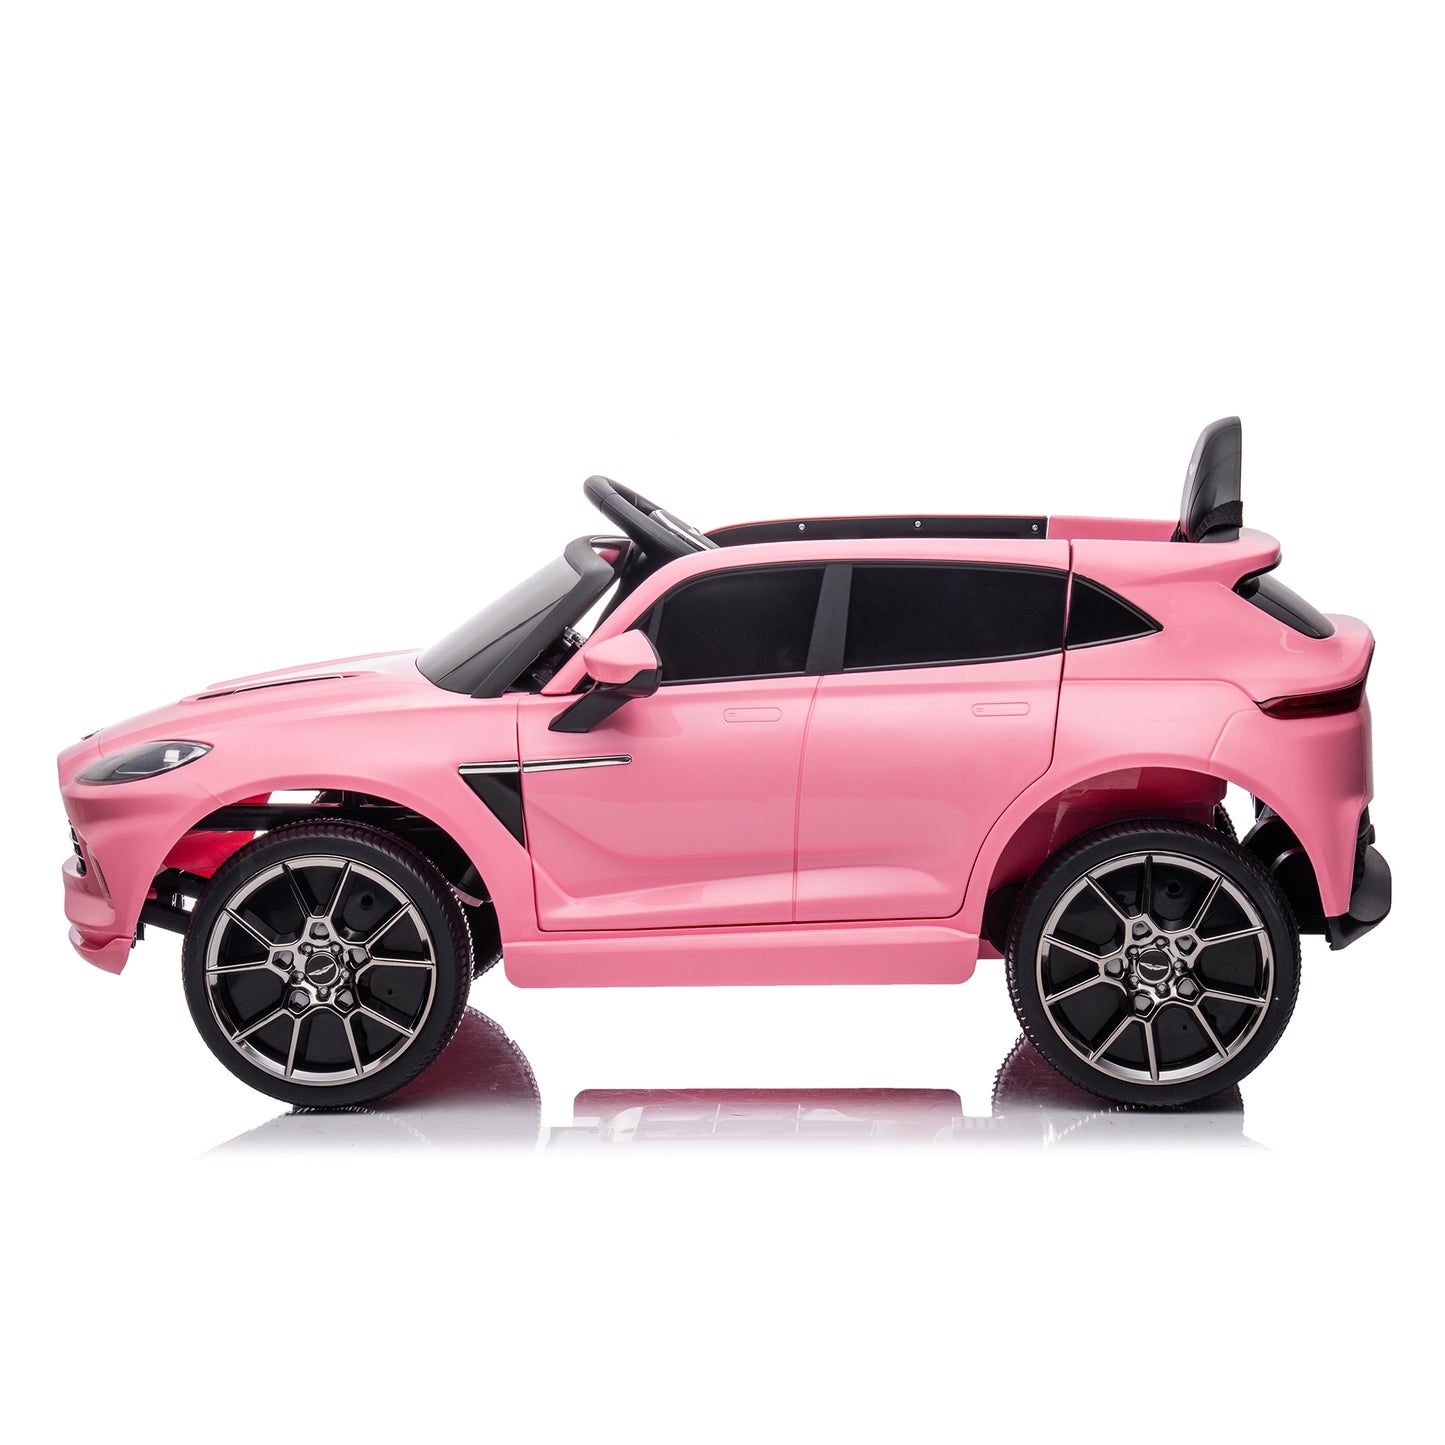 Aston Martin 12V elektrisches Kinder-Rutschauto mit Doppelantrieb und Fernbedienung, batteriebetriebenes Kinder-Rutschauto rosa, 4 Räder, Kinderspielzeugfahrzeug, LED-Scheinwerfer, Fernbedienung, Musik, USB